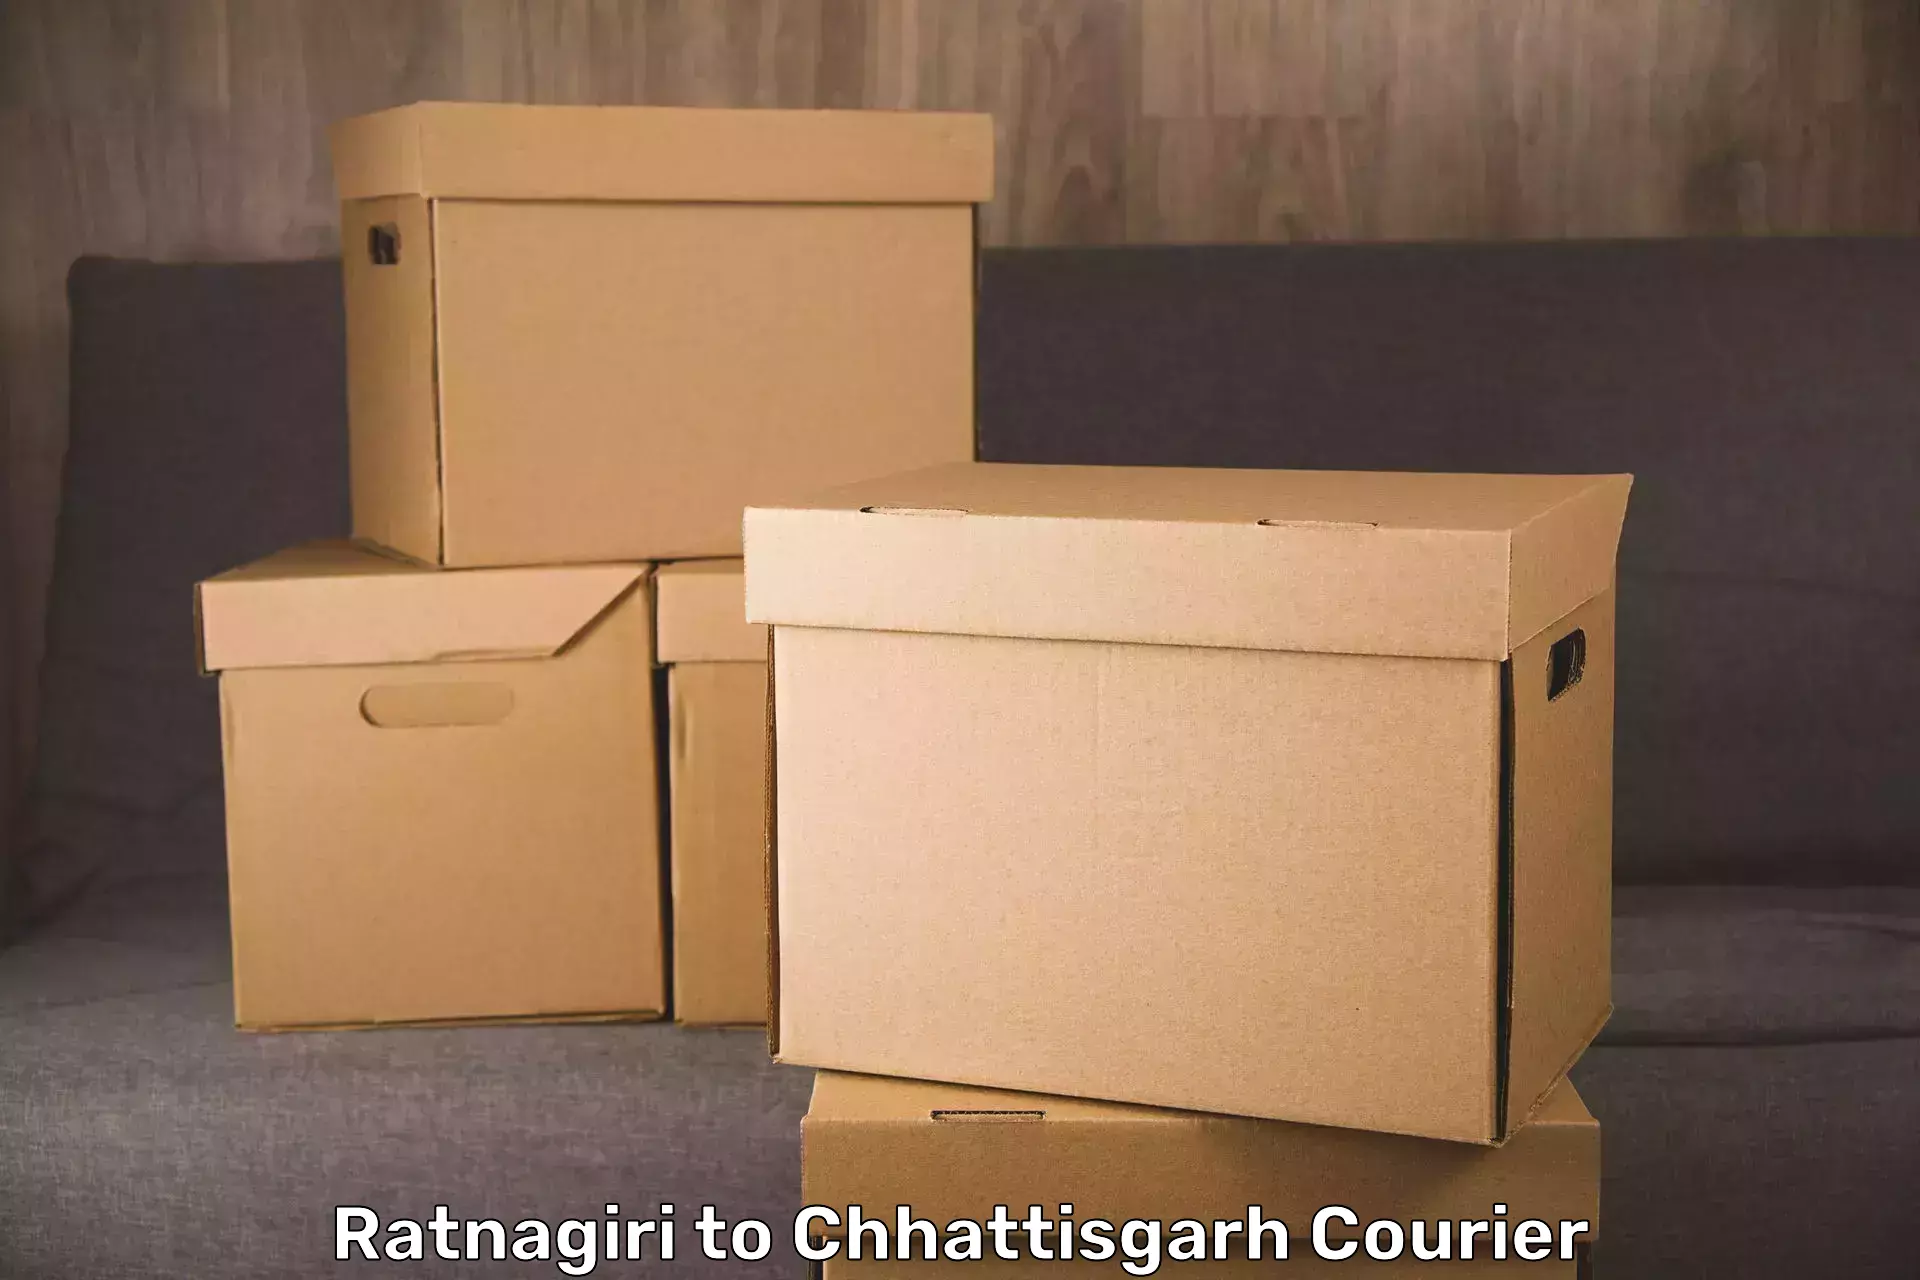 Baggage relocation service Ratnagiri to Chirimiri